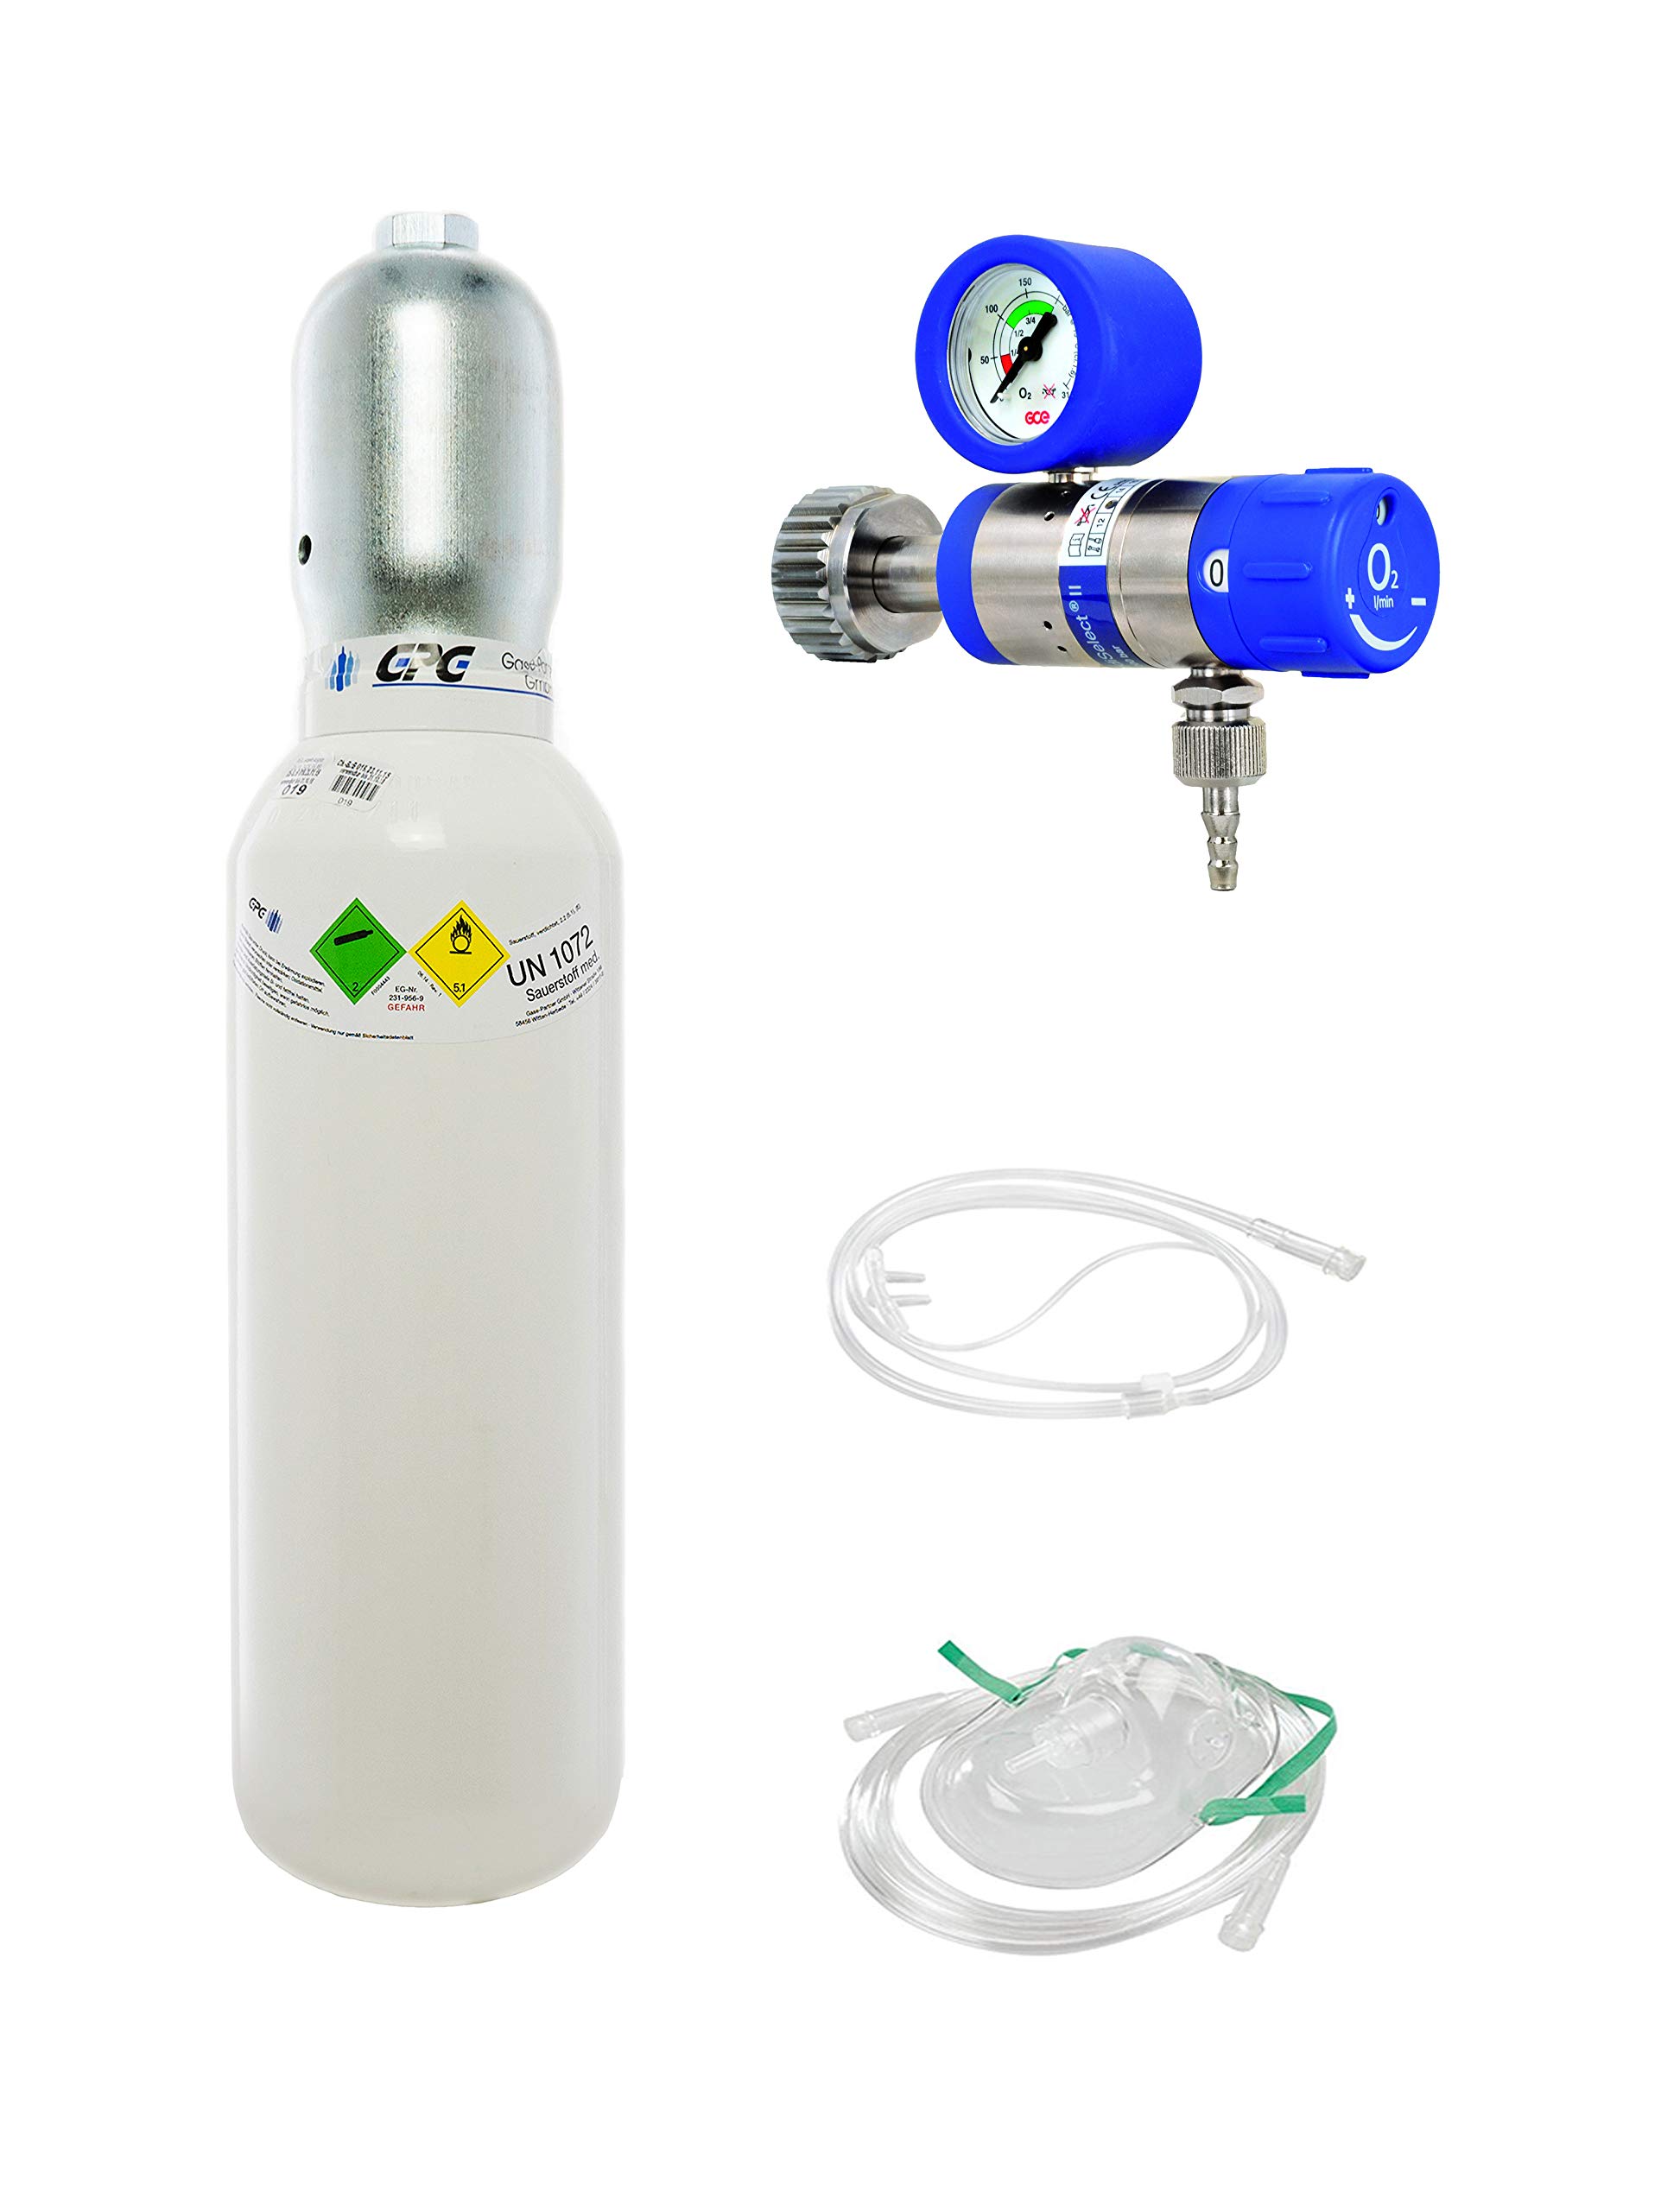 5 Liter medizinischer Sauerstoff (Leichtstahlflasche) mit Druckminderer MediSelect 25 und Maske